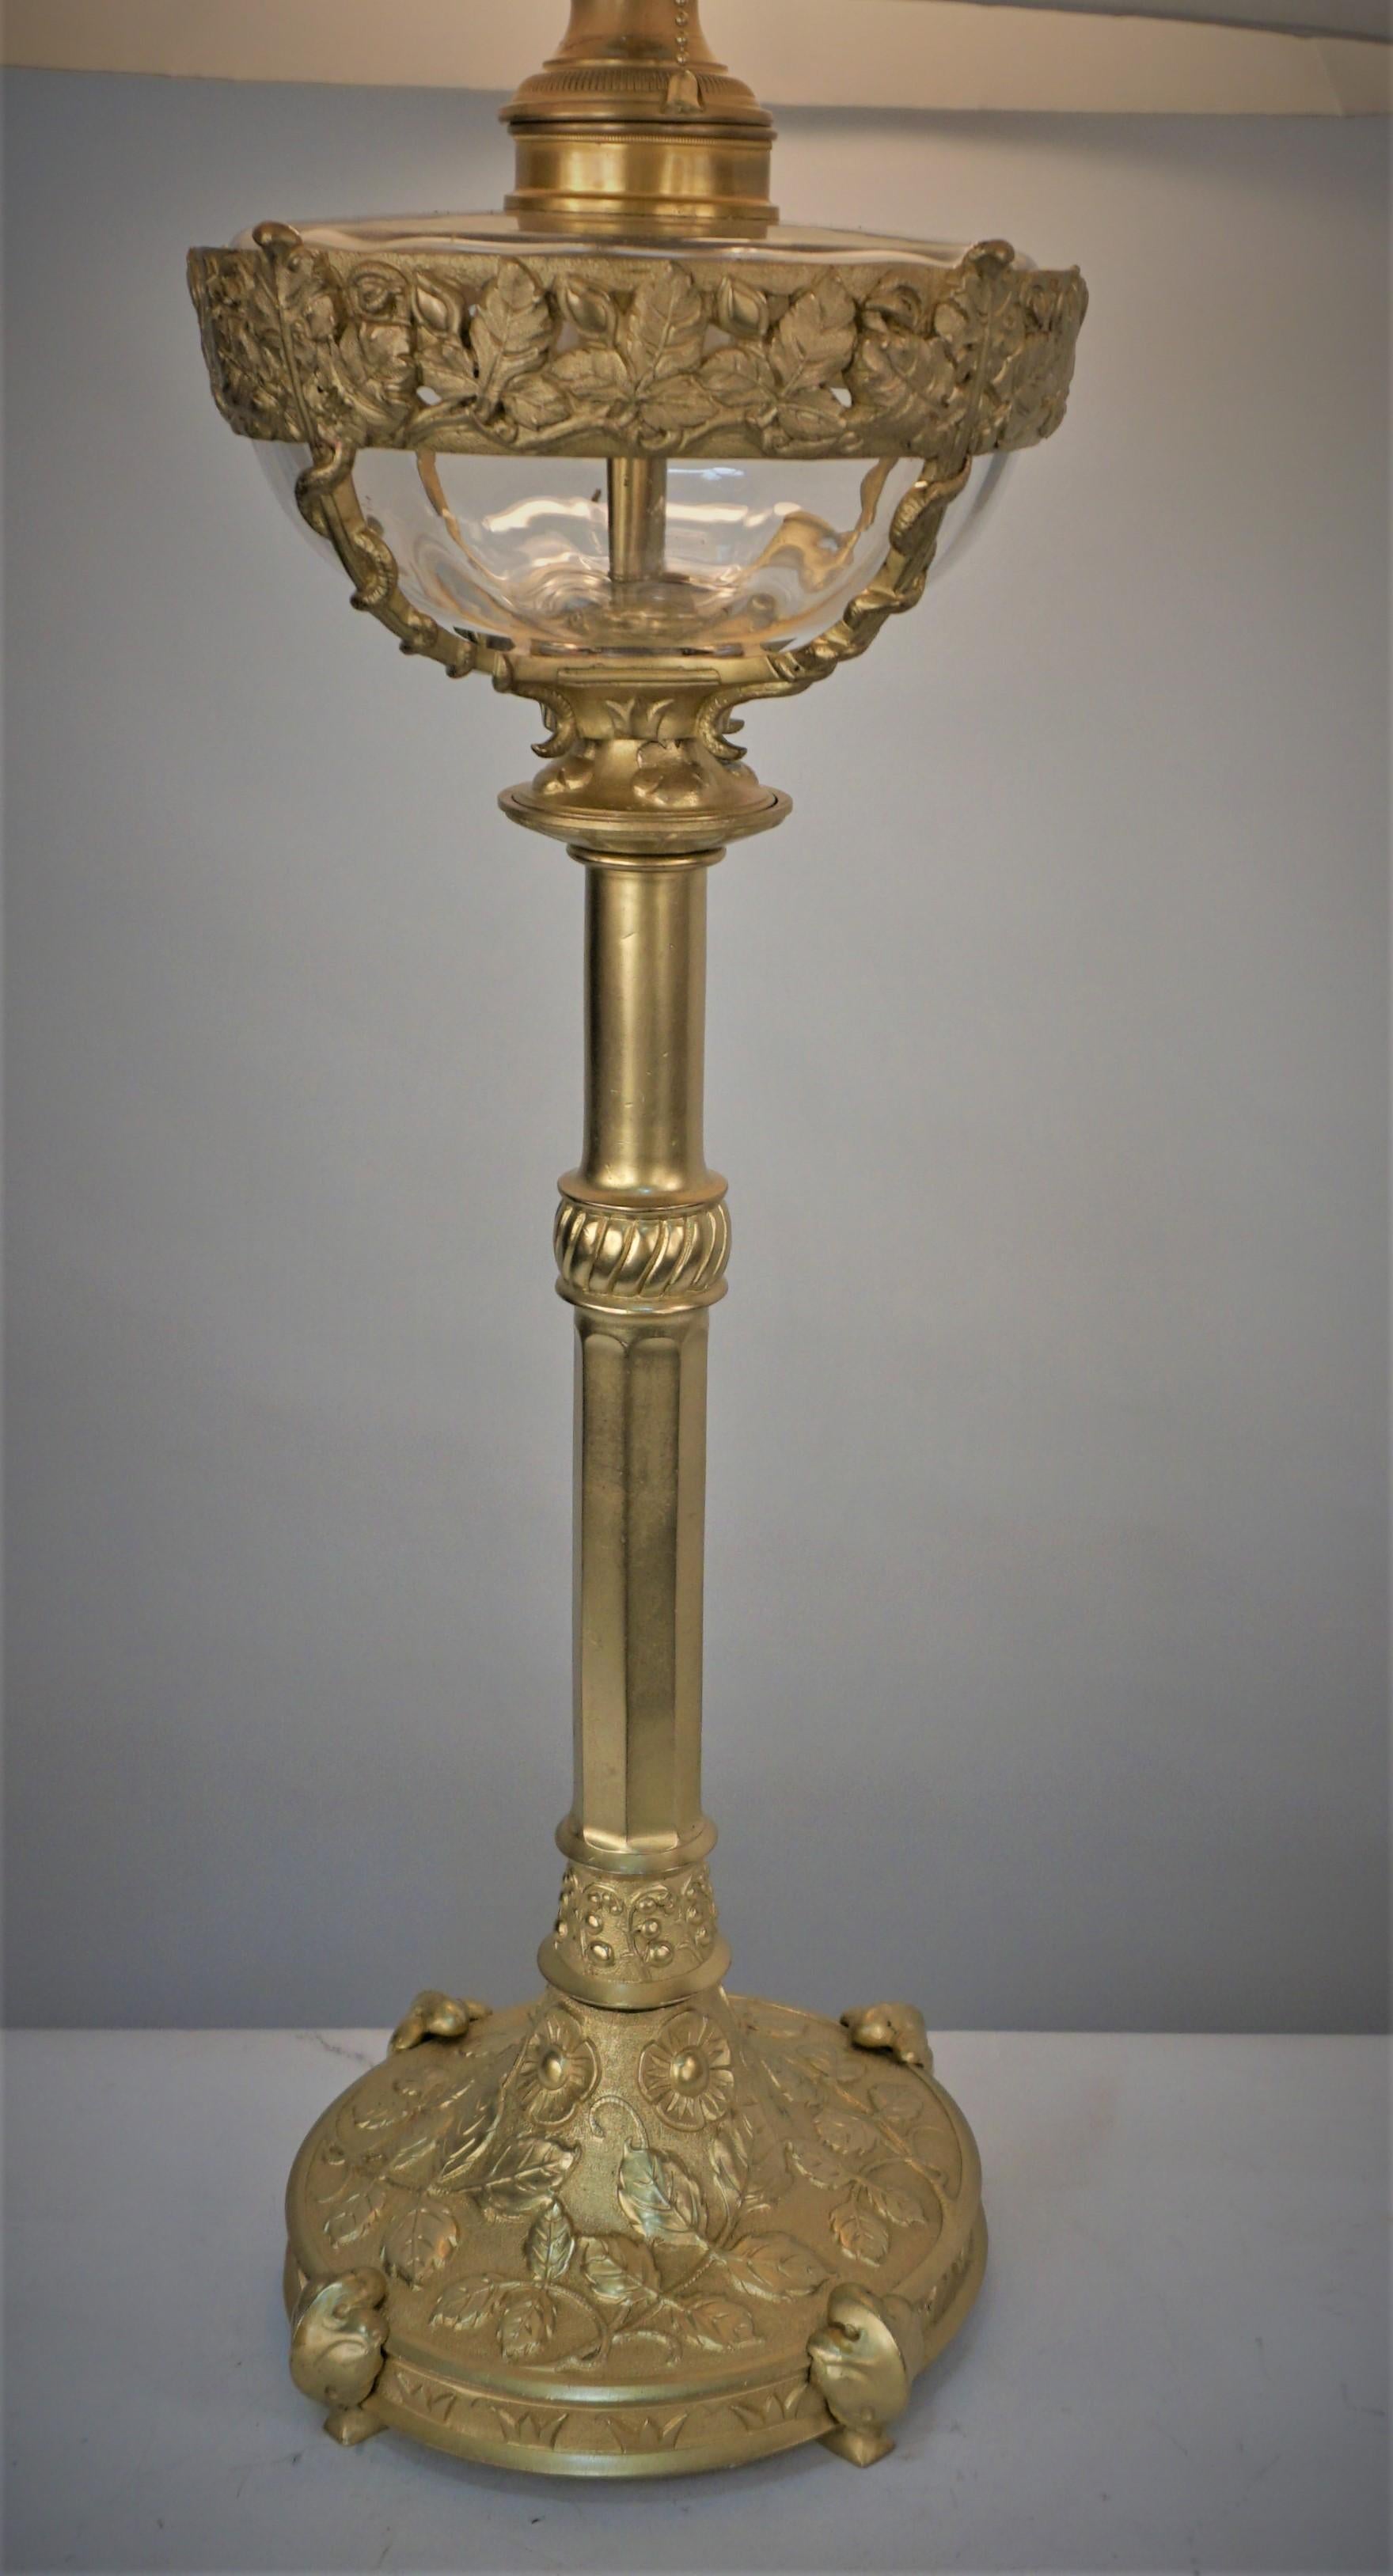 Cette belle lampe à huile en bronze et cristal du 19ème siècle a été électrifiée par des professionnels avec une prise à chaîne double et équipée d'un abat-jour en soie plissé à la main.
Les mesures incluent l'abat-jour.